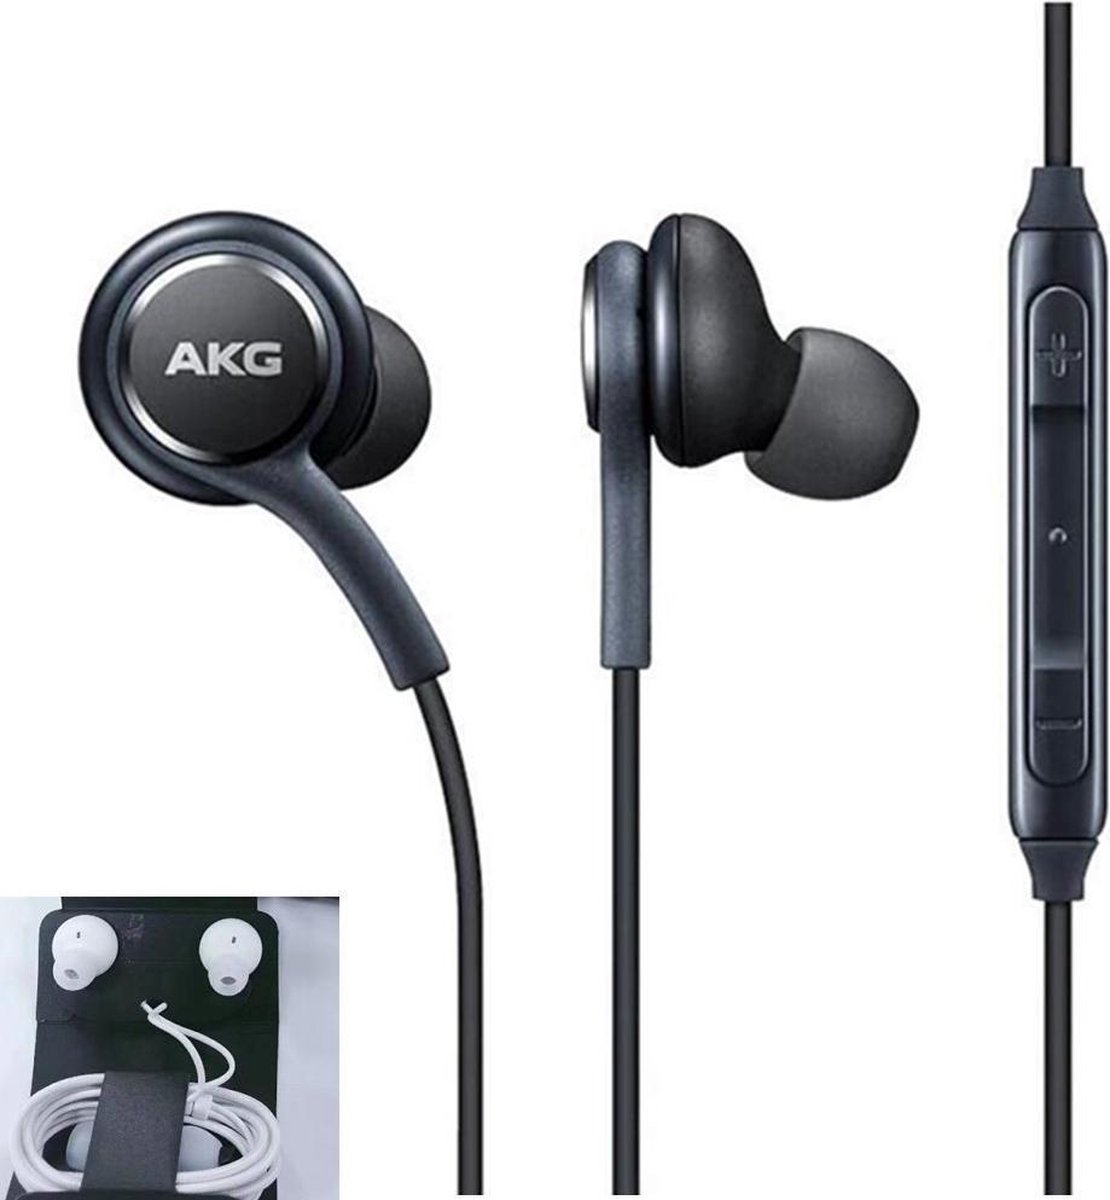 Wired AKG Earphones - Zwart - Samsung Galaxy S10+ oortjes - Tuned by AKG - In-ear oordoppen - Oortjes met draad - Noice-cancelled - Android apparaat oortjes - Merkloos